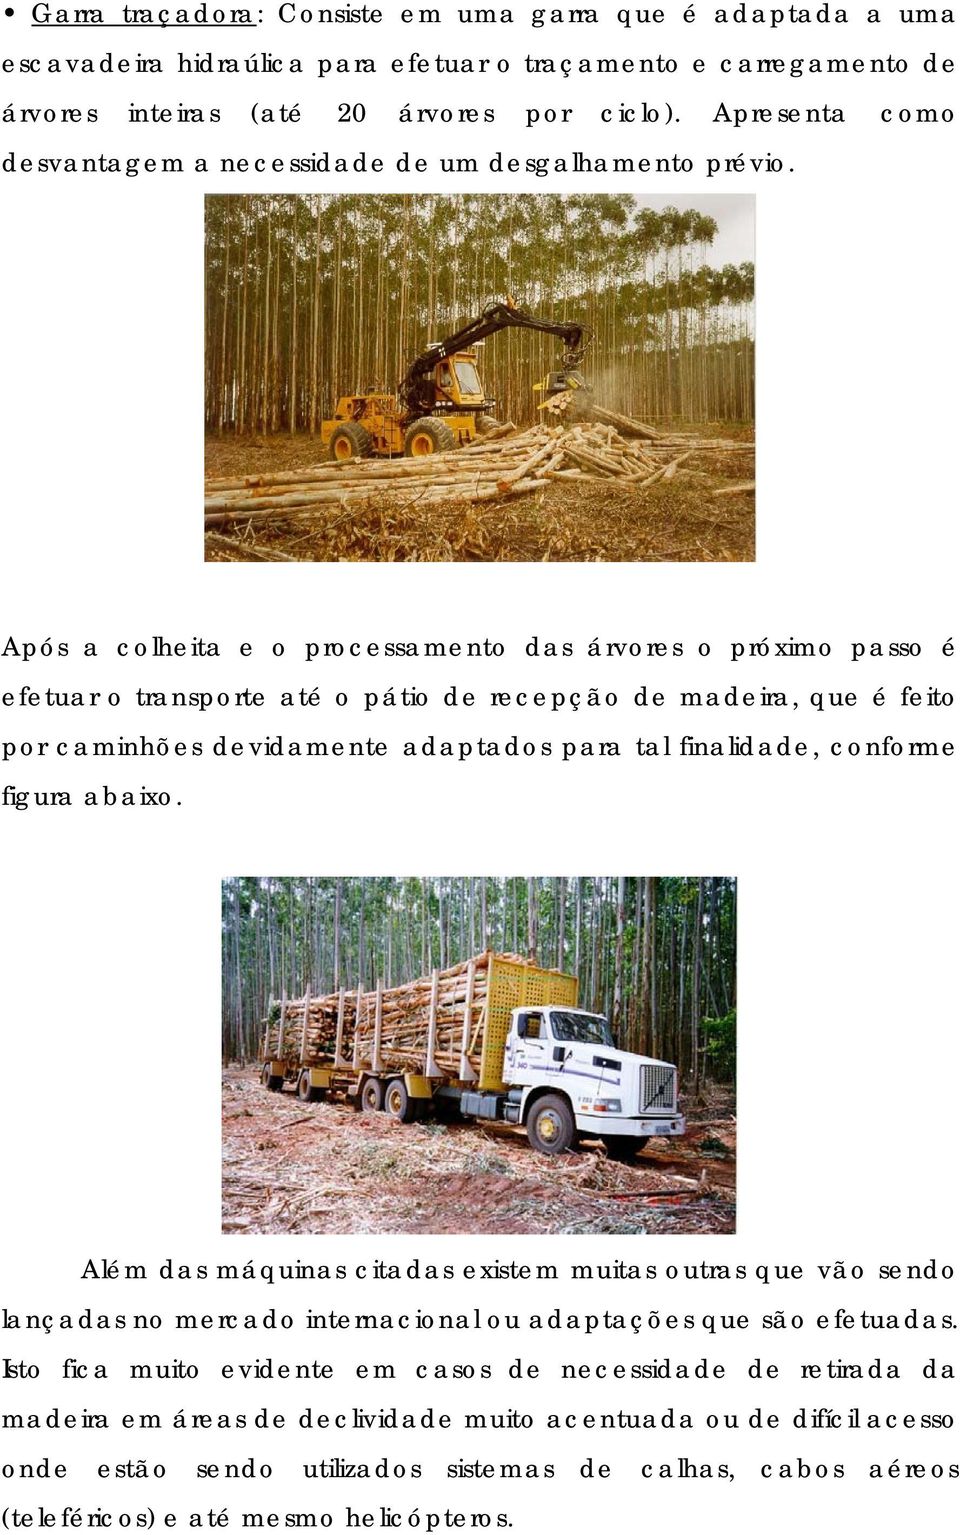 Após a colheita e o processamento das árvores o próximo passo é efetuar o transporte até o pátio de recepção de madeira, que é feito por caminhões devidamente adaptados para tal finalidade, conforme